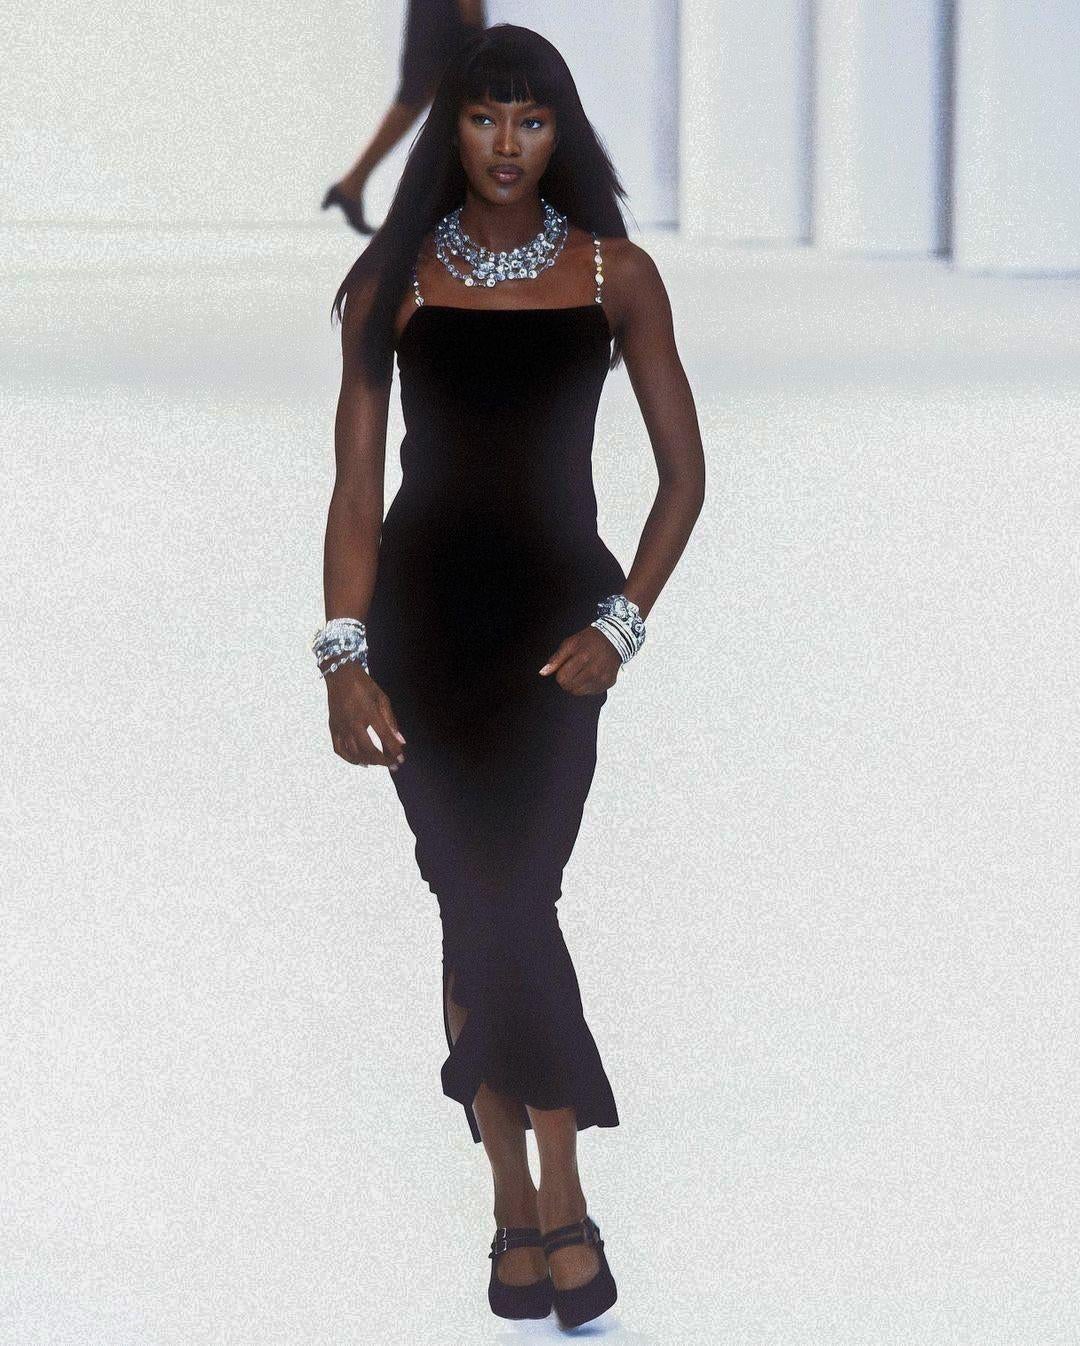 Lernen Sie dieses exquisite Vintage-Kleid von Chanel aus der legendären Frühjahr/Sommer-Kollektion 1998 kennen, das von der umwerfenden Naomi Campbell getragen wurde. Die Silhouette dieses Modells aus luxuriösem schwarzem Woll-Crêpe wird von